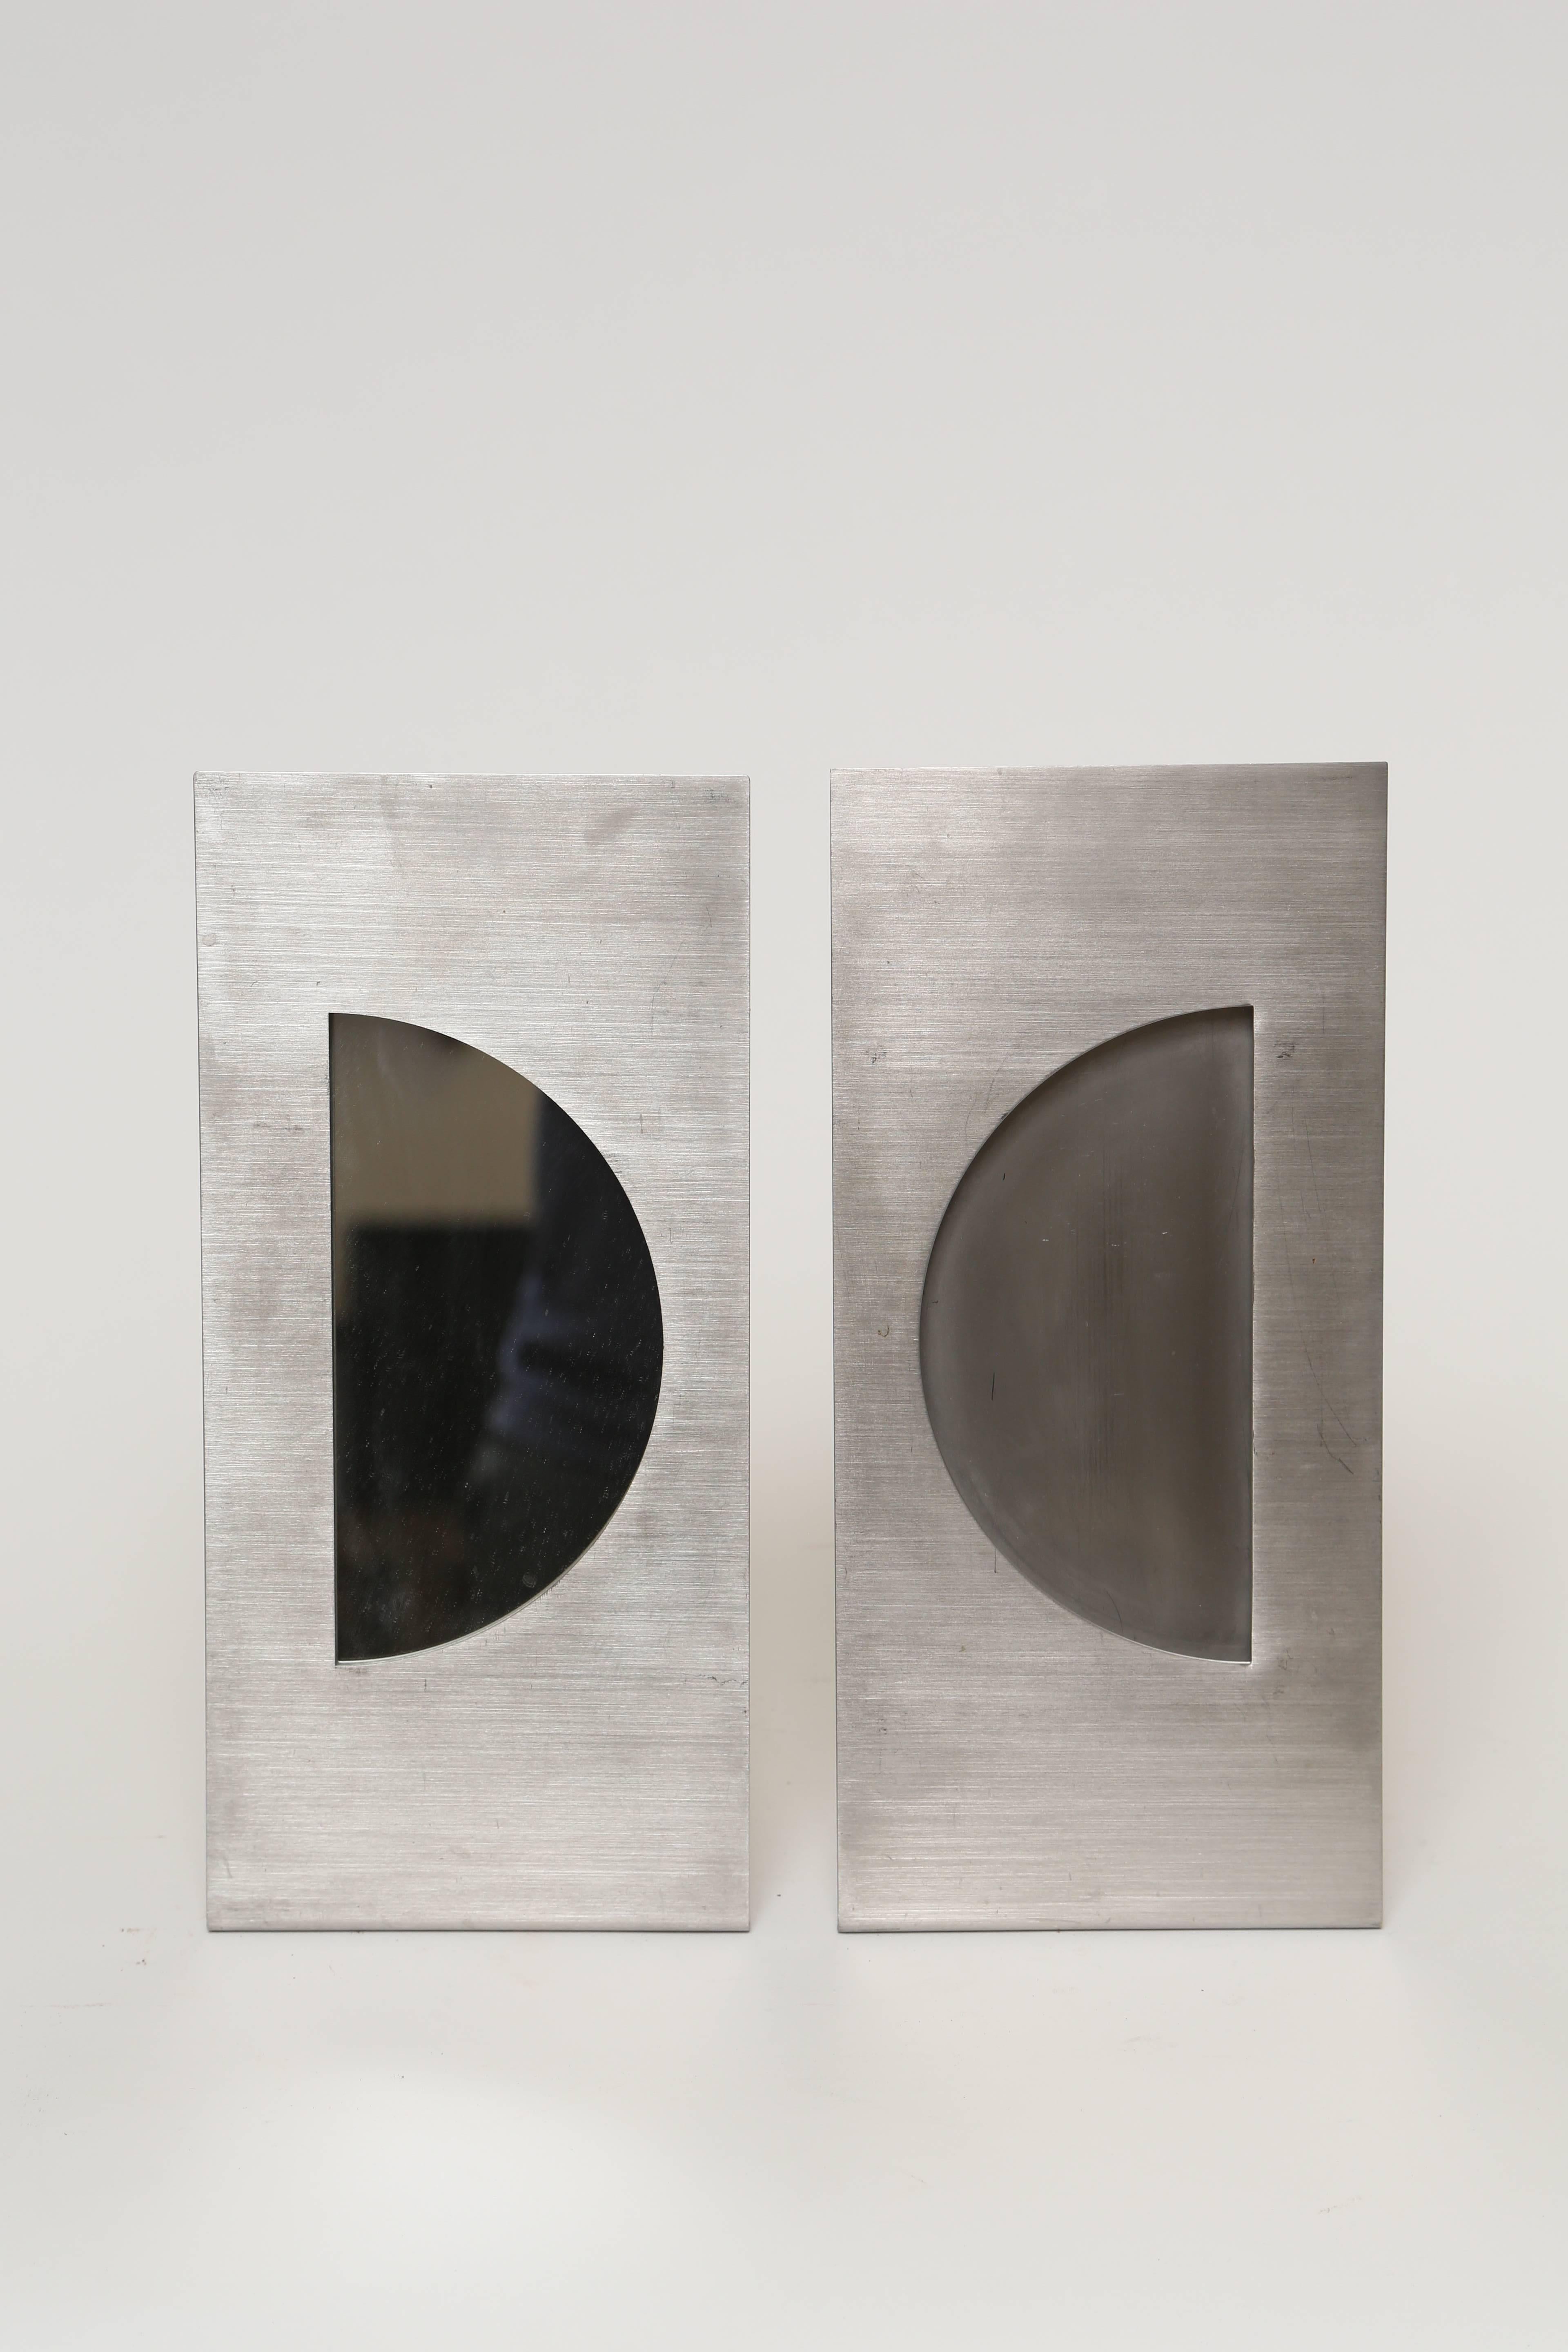 Ein schönes Paar Bilderrahmen (oder Spiegel) aus gebürstetem Stahl
Entworfen von Gabriella Crespi, eingravierte Signatur
Links und rechts.
Der Preis gilt für das Paar